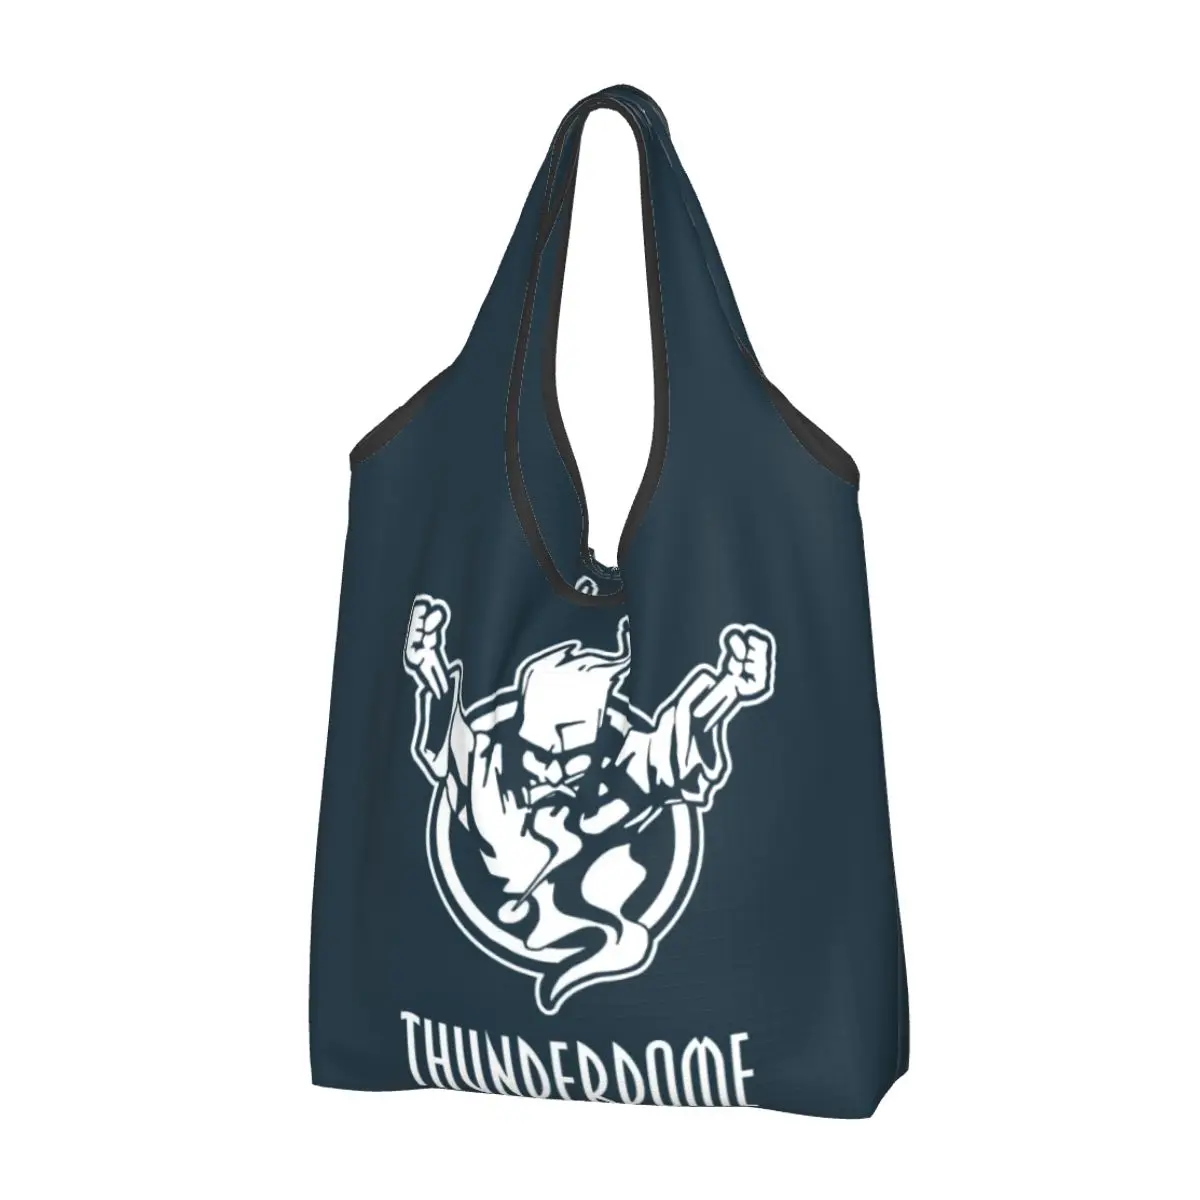 Сумки для покупок в продуктовом магазине Thunderdome, милая сумка-тоут для покупок, большая вместительная портативная сумка для музыкального фестиваля Hardcore Gabber.